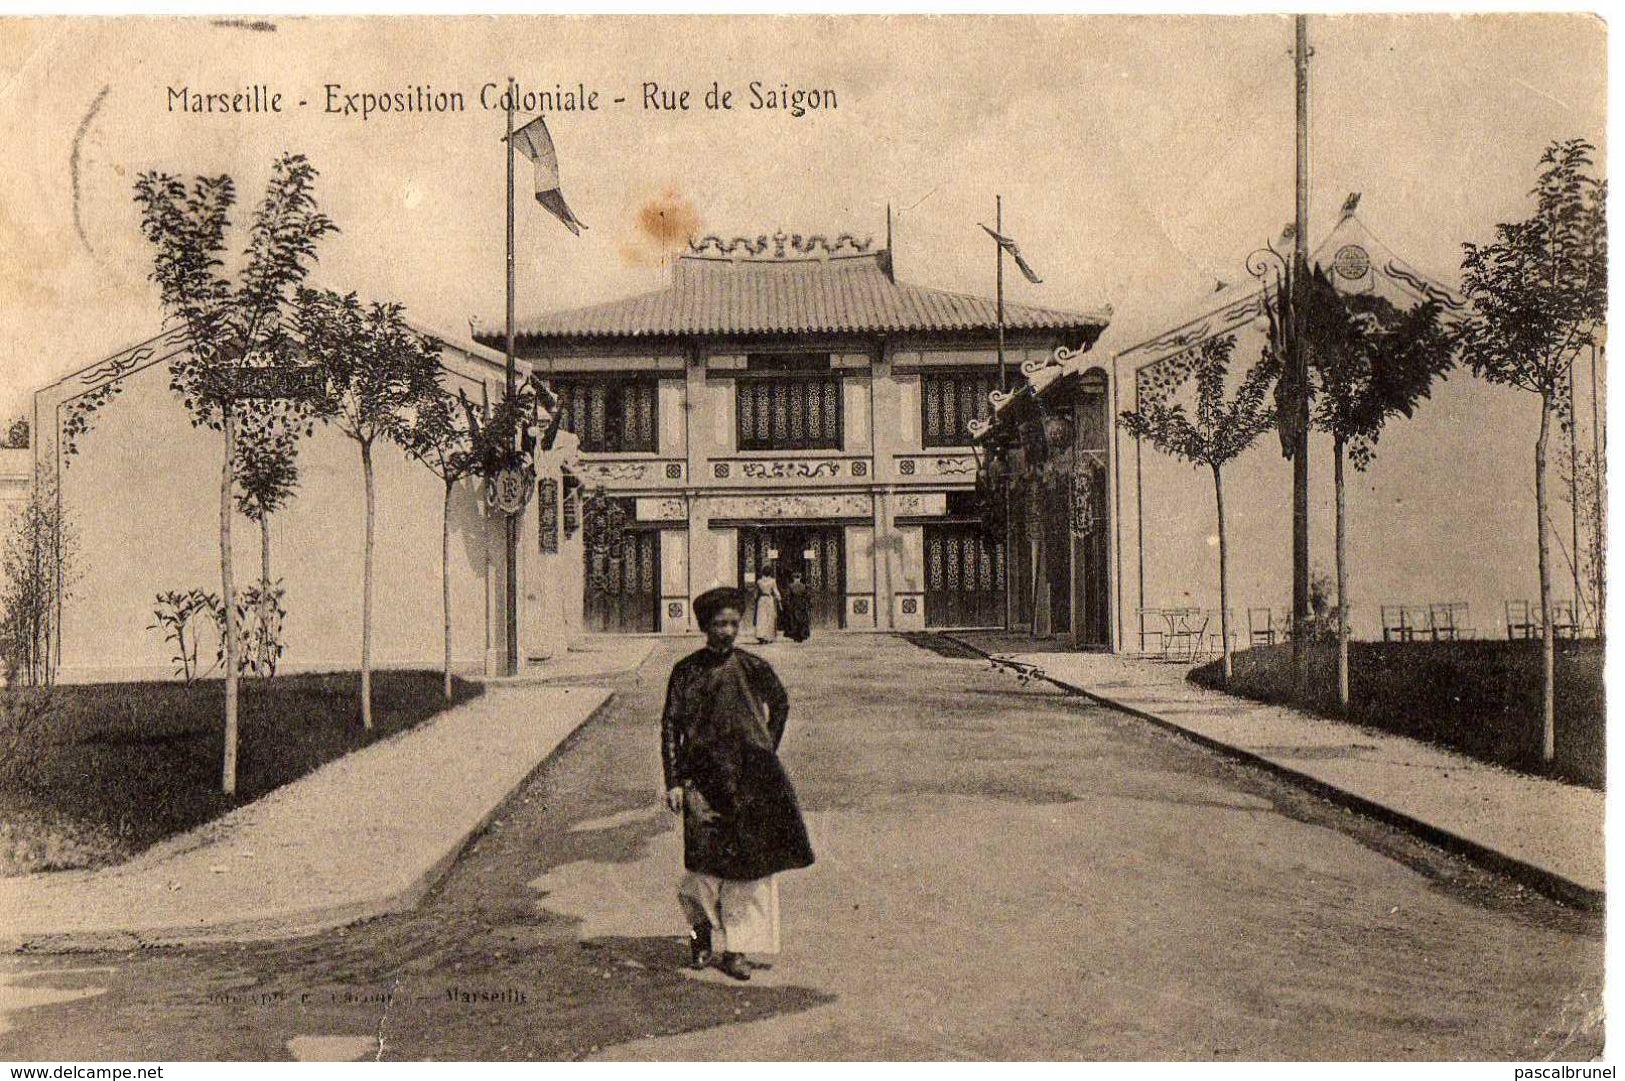 MARSEILLE - EXPOSITION COLONIALE - RUE DE SAIGON - Expositions Coloniales 1906 - 1922